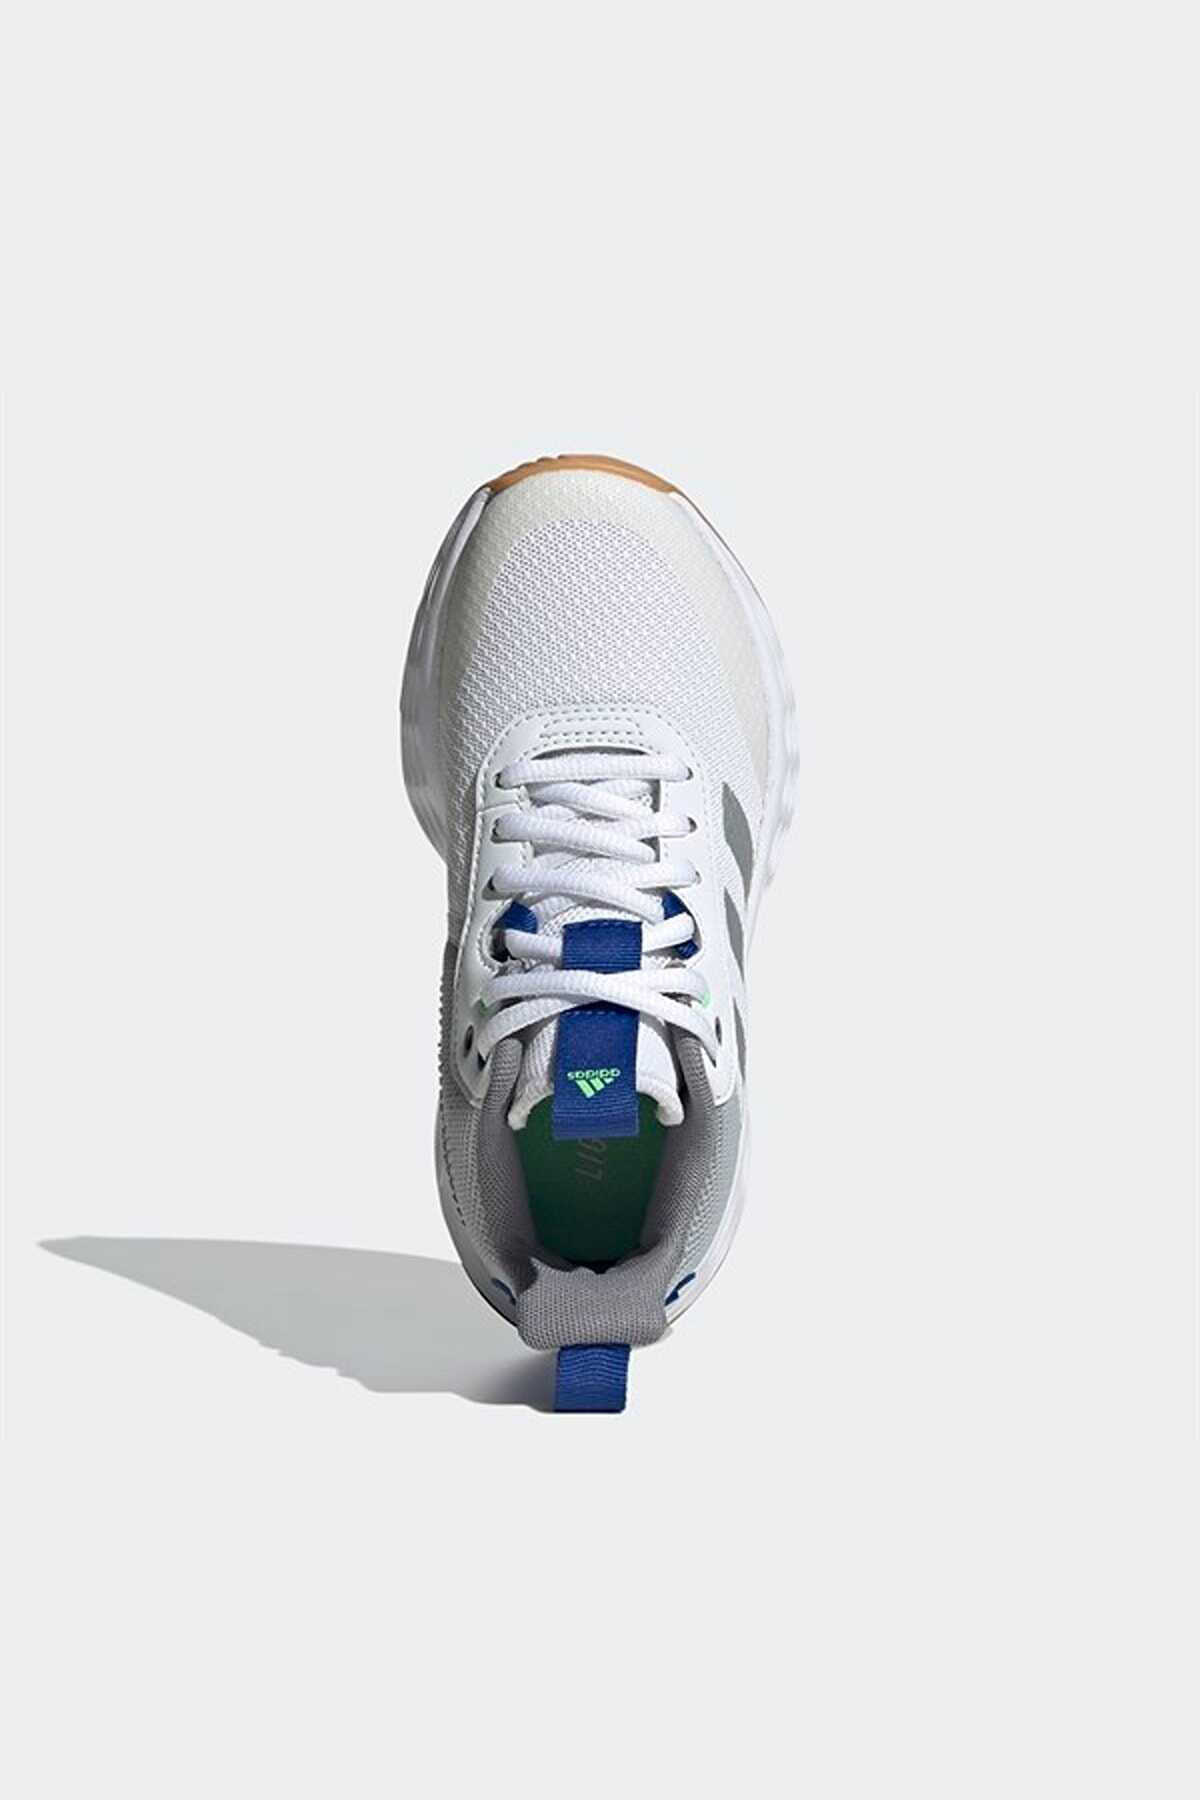 کفش بسکتبال بچه گانه یونیسکس سفید طوسی مدل Gw1553 برند adidas 